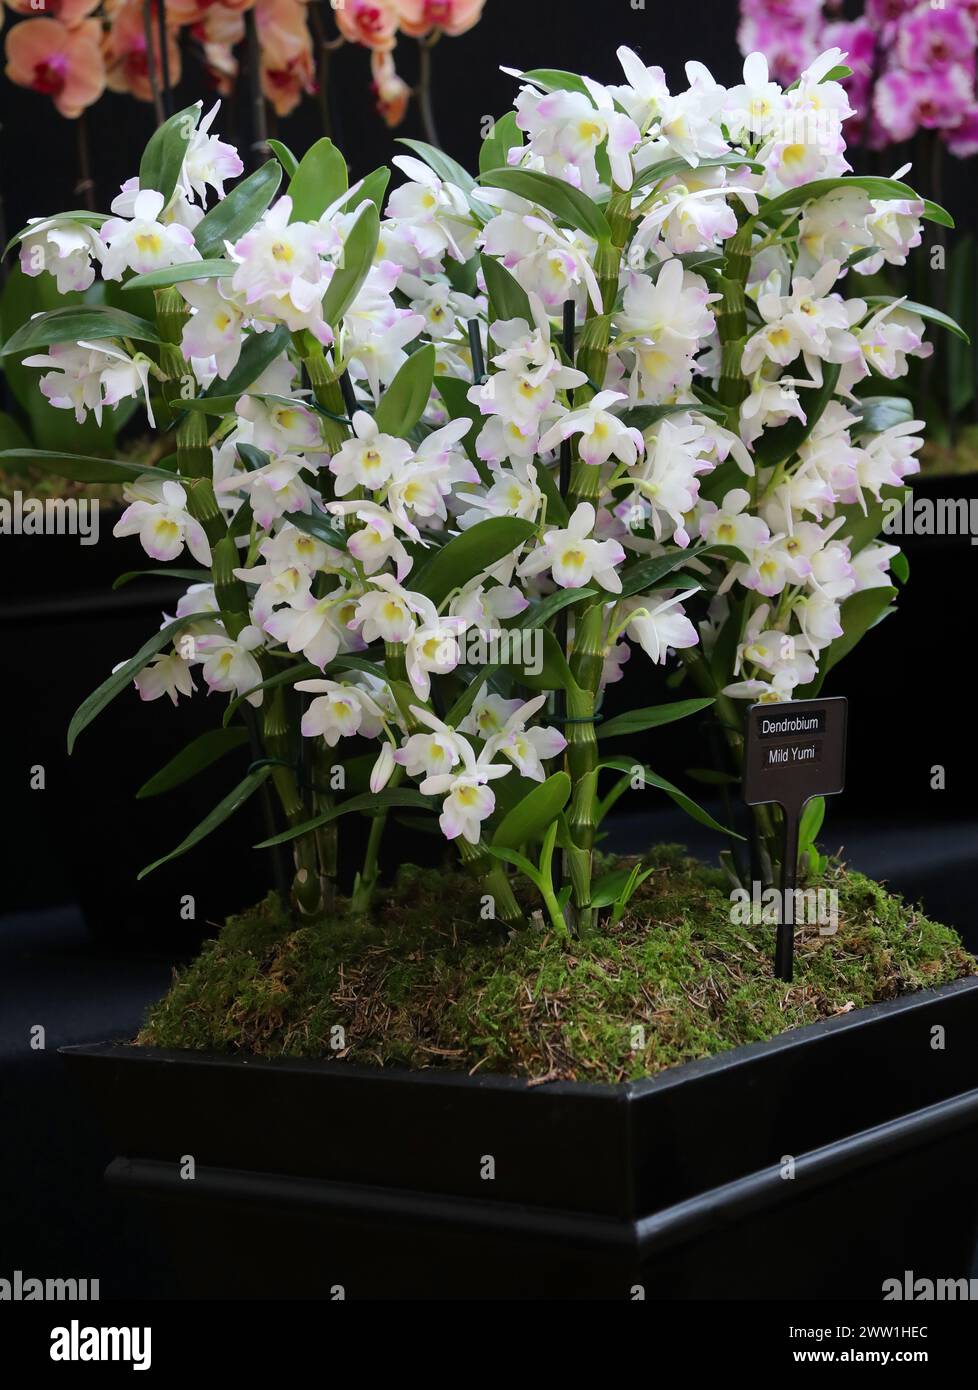 Orchidea, Dendrobium mild Yumi, Dendrobiinae, Orchidaceae. Il Dendrobium è un genere di orchidee per lo più epifitiche e litofisiche della famiglia delle Orchidaceae. Foto Stock